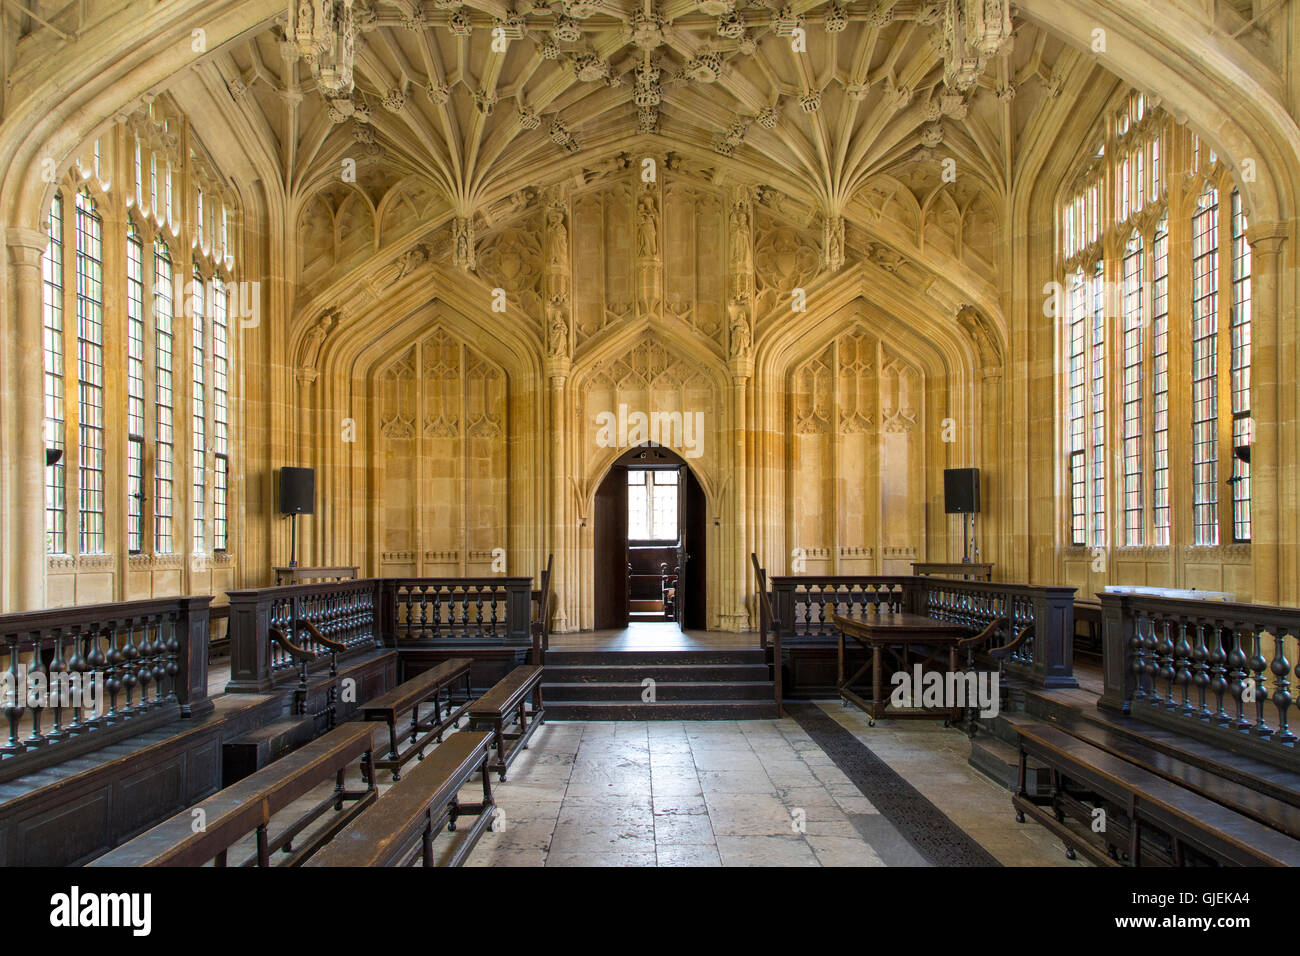 Innenraum der Divinity School - 1488 erbaut, Teil der aktuellen Bodleian Libraries, Oxford, Oxfordshire, England Stockfoto